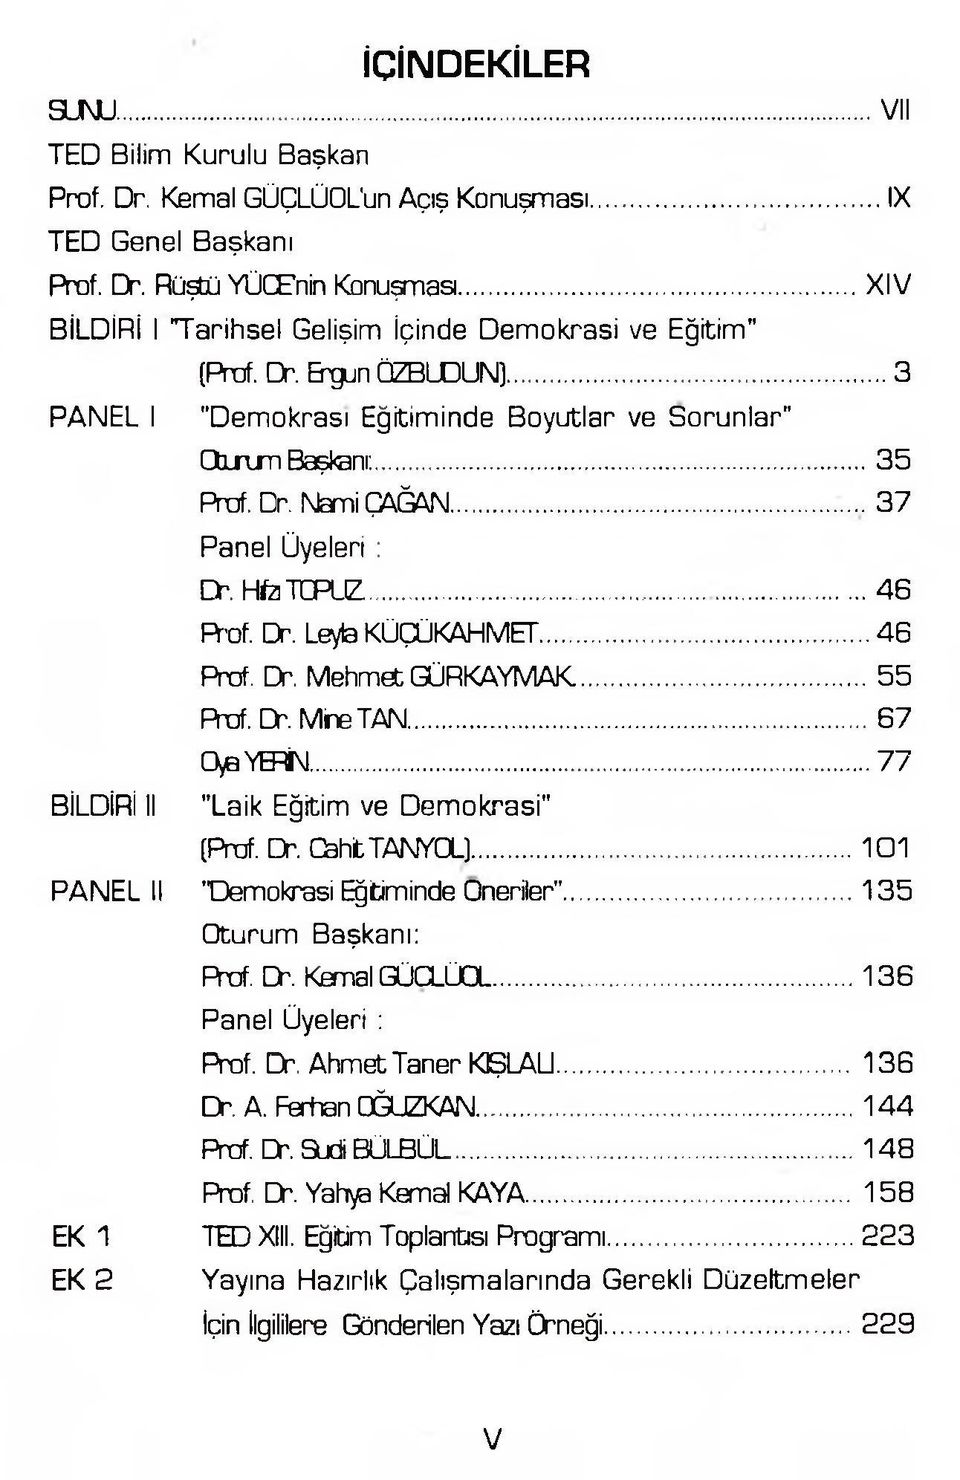 ...3 7 Panel Üyeleri : Dr. Hfo TCPLIZ...46 R-of. Dr. Leyla KÜÇÜKAHMET...46 Prof. Dr. Mehmet GÜRKAYMAK... 55 Prof. Dr. Mine TAN...67 0>a YERİN... 77 BİLDİRİ II "Laik Eğitim ve Demokrasi" [Prof. Dr. OahtTAKYOL).